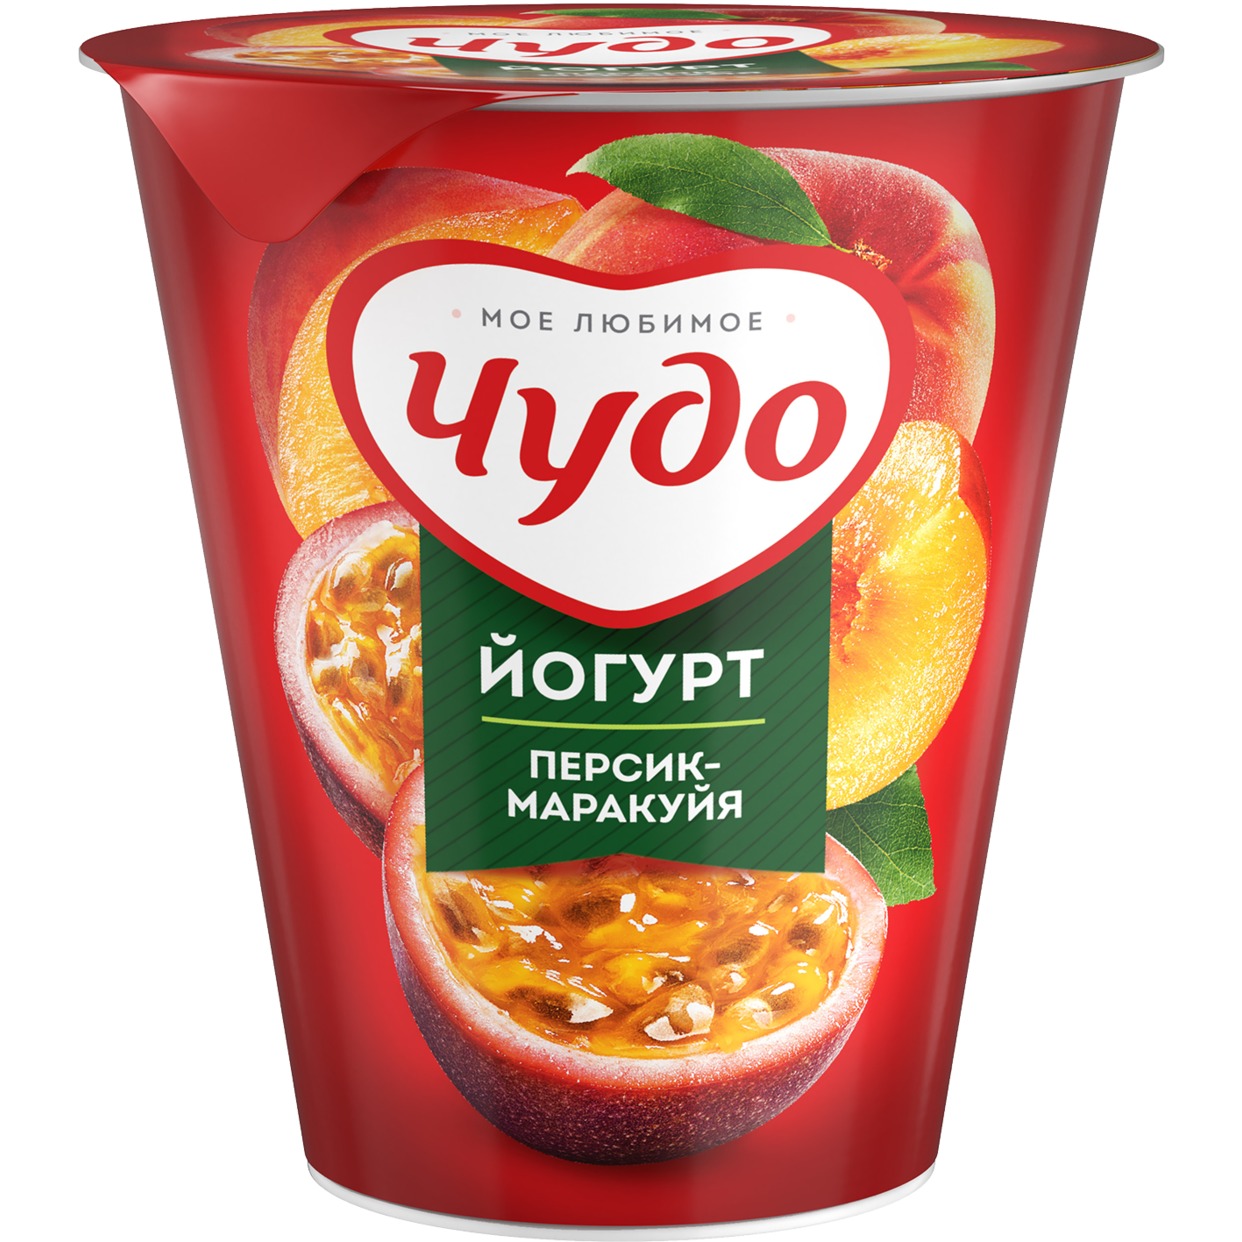 Йогурт фруктовый Чудо Персик-Марак 2.5% 290г по акции в Пятерочке